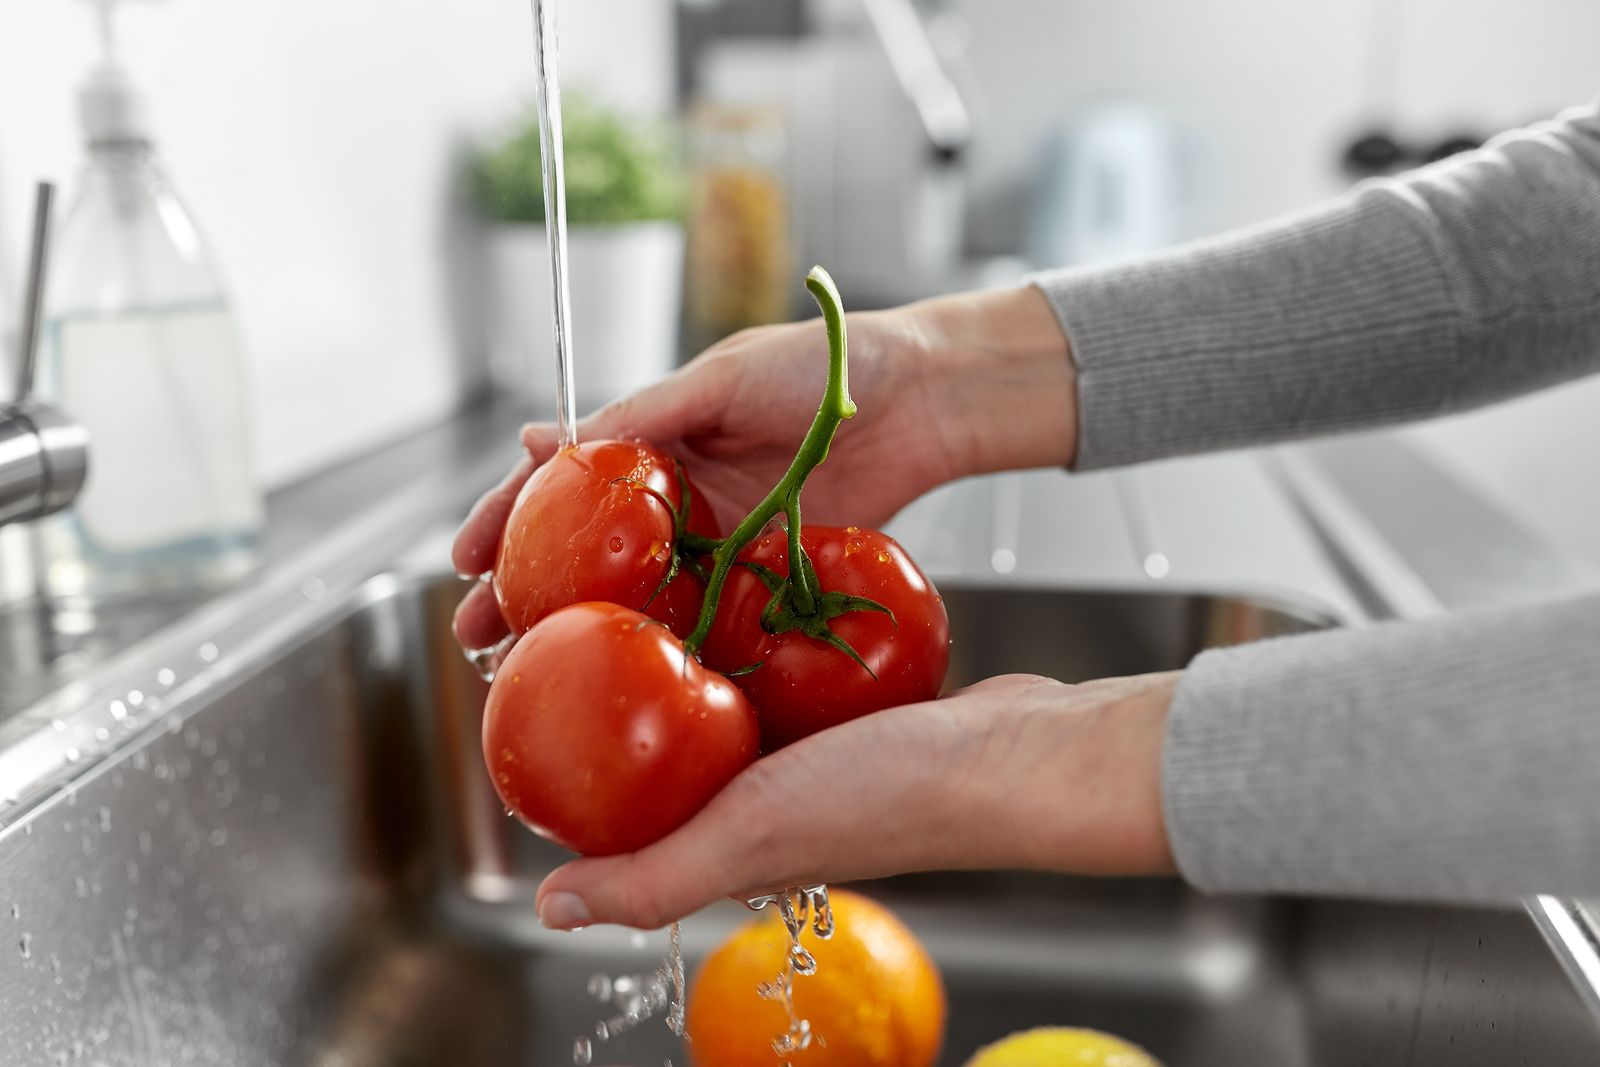 Trucos para limpiar bien las frutas y verduras